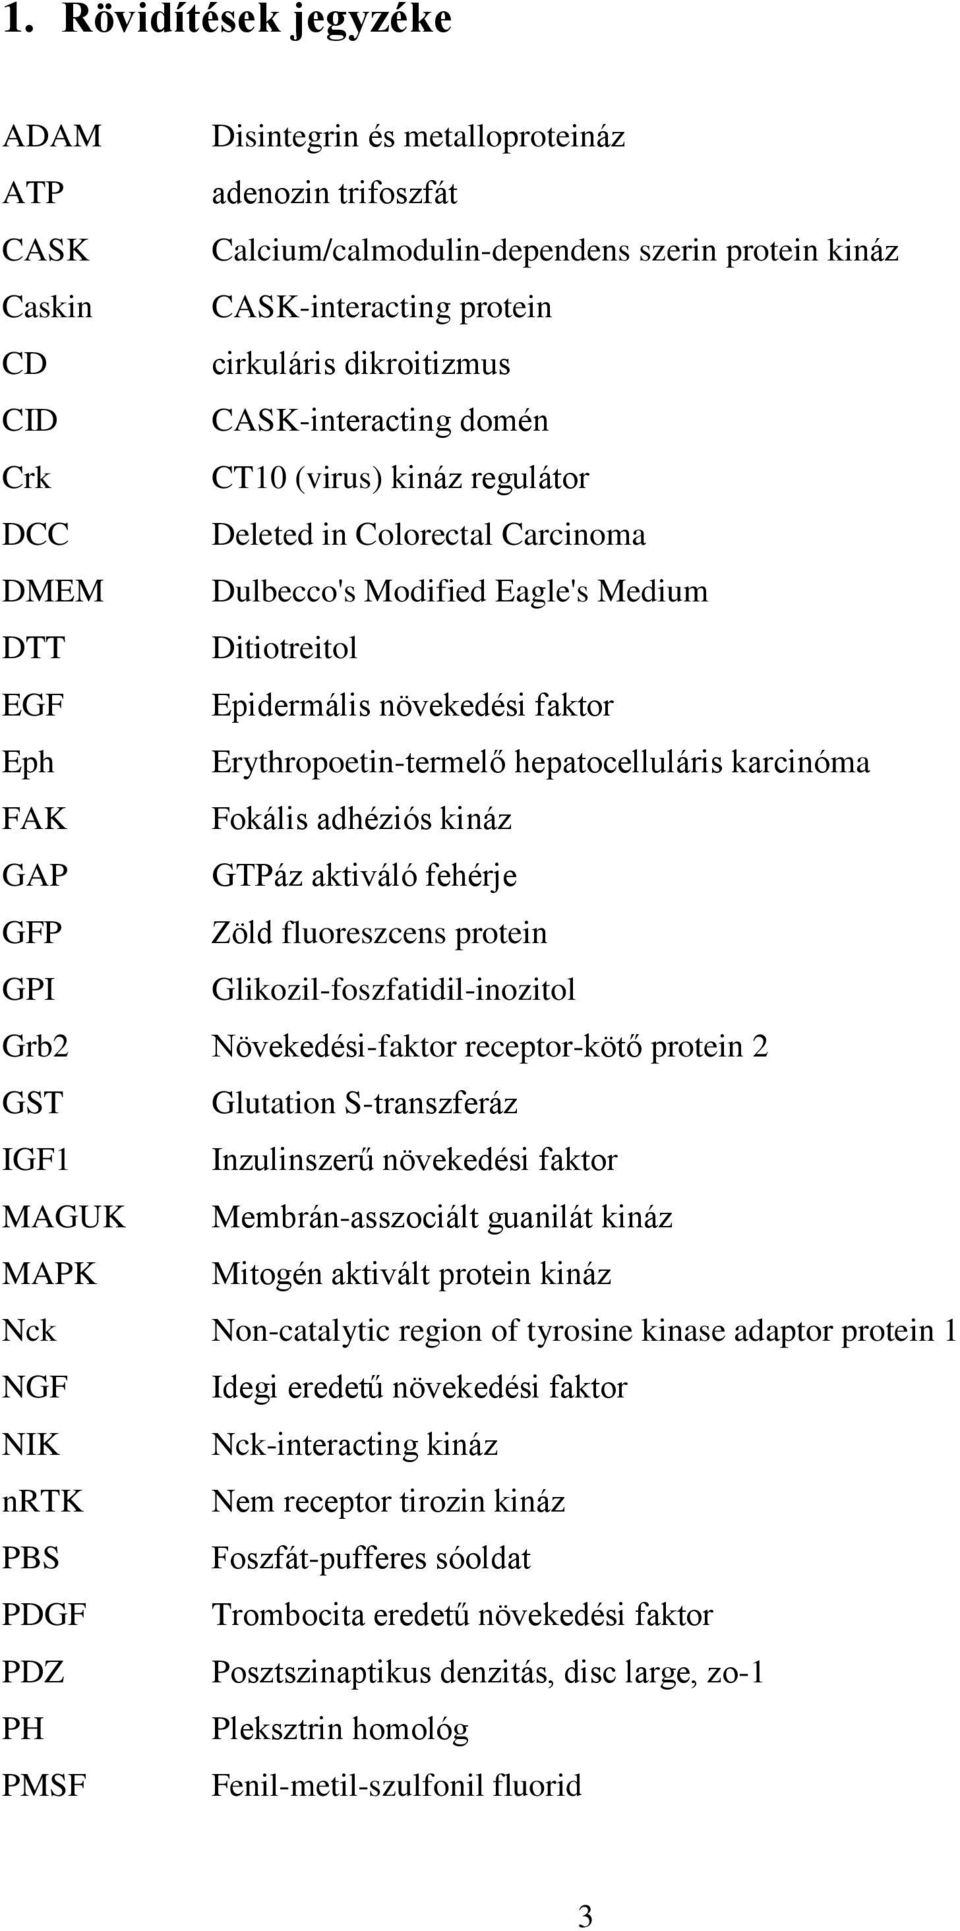 Erythropoetin-termelő hepatocelluláris karcinóma FAK Fokális adhéziós kináz GAP GTPáz aktiváló fehérje GFP Zöld fluoreszcens protein GPI Glikozil-foszfatidil-inozitol Grb2 Növekedési-faktor